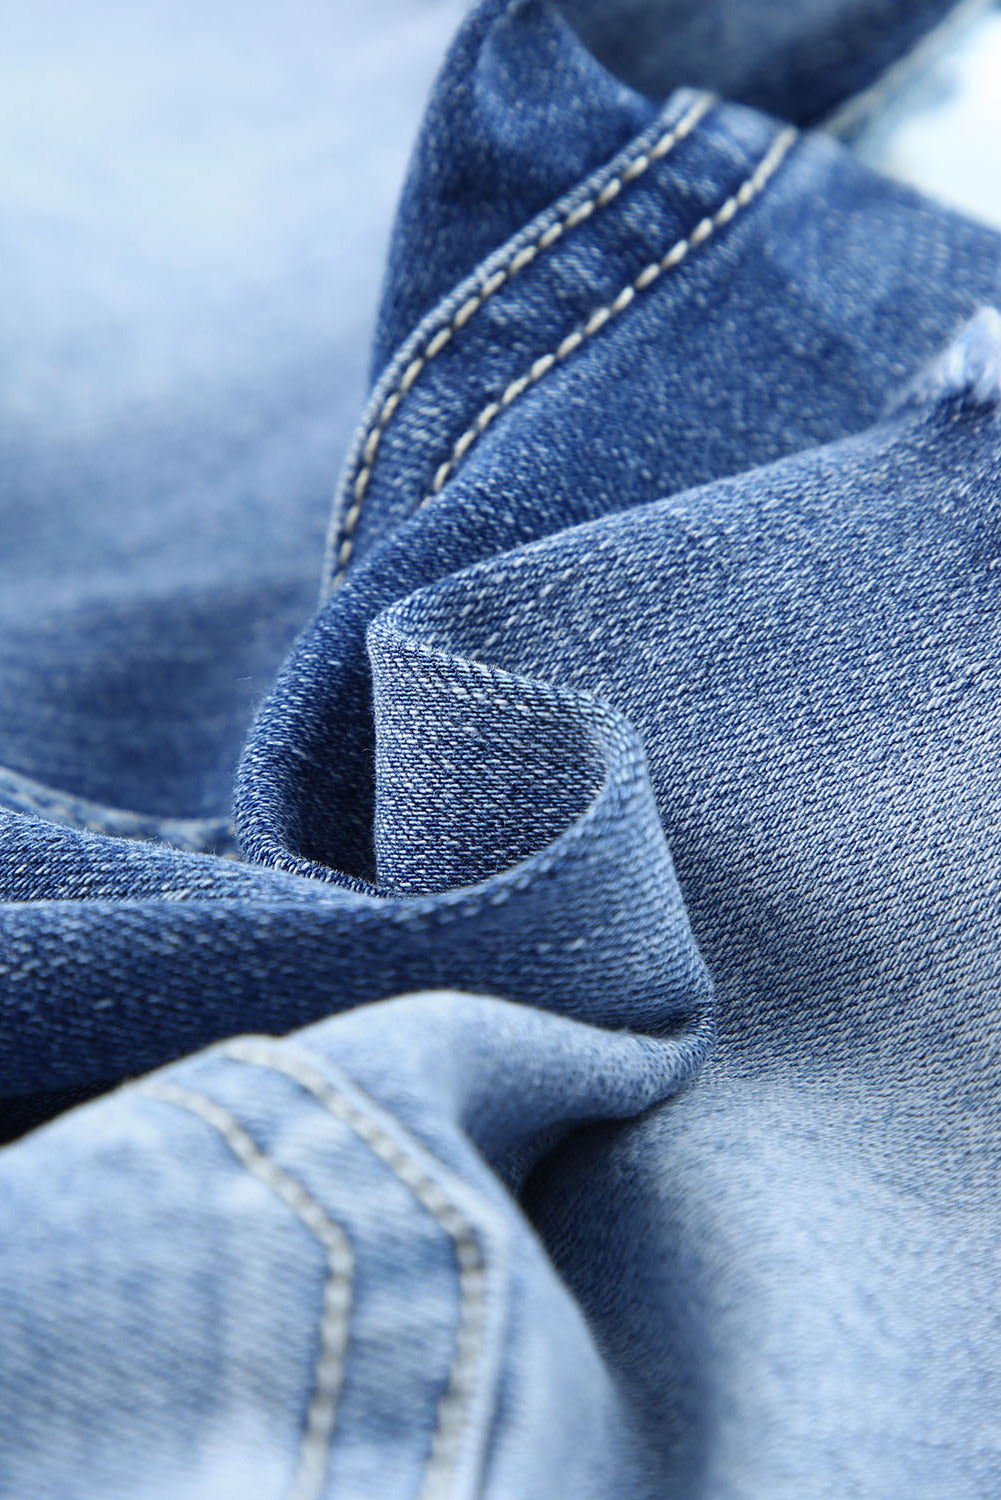 Pantalones cortos de mezclilla de talle alto con bragueta de botones quintuplicados y azul cielo